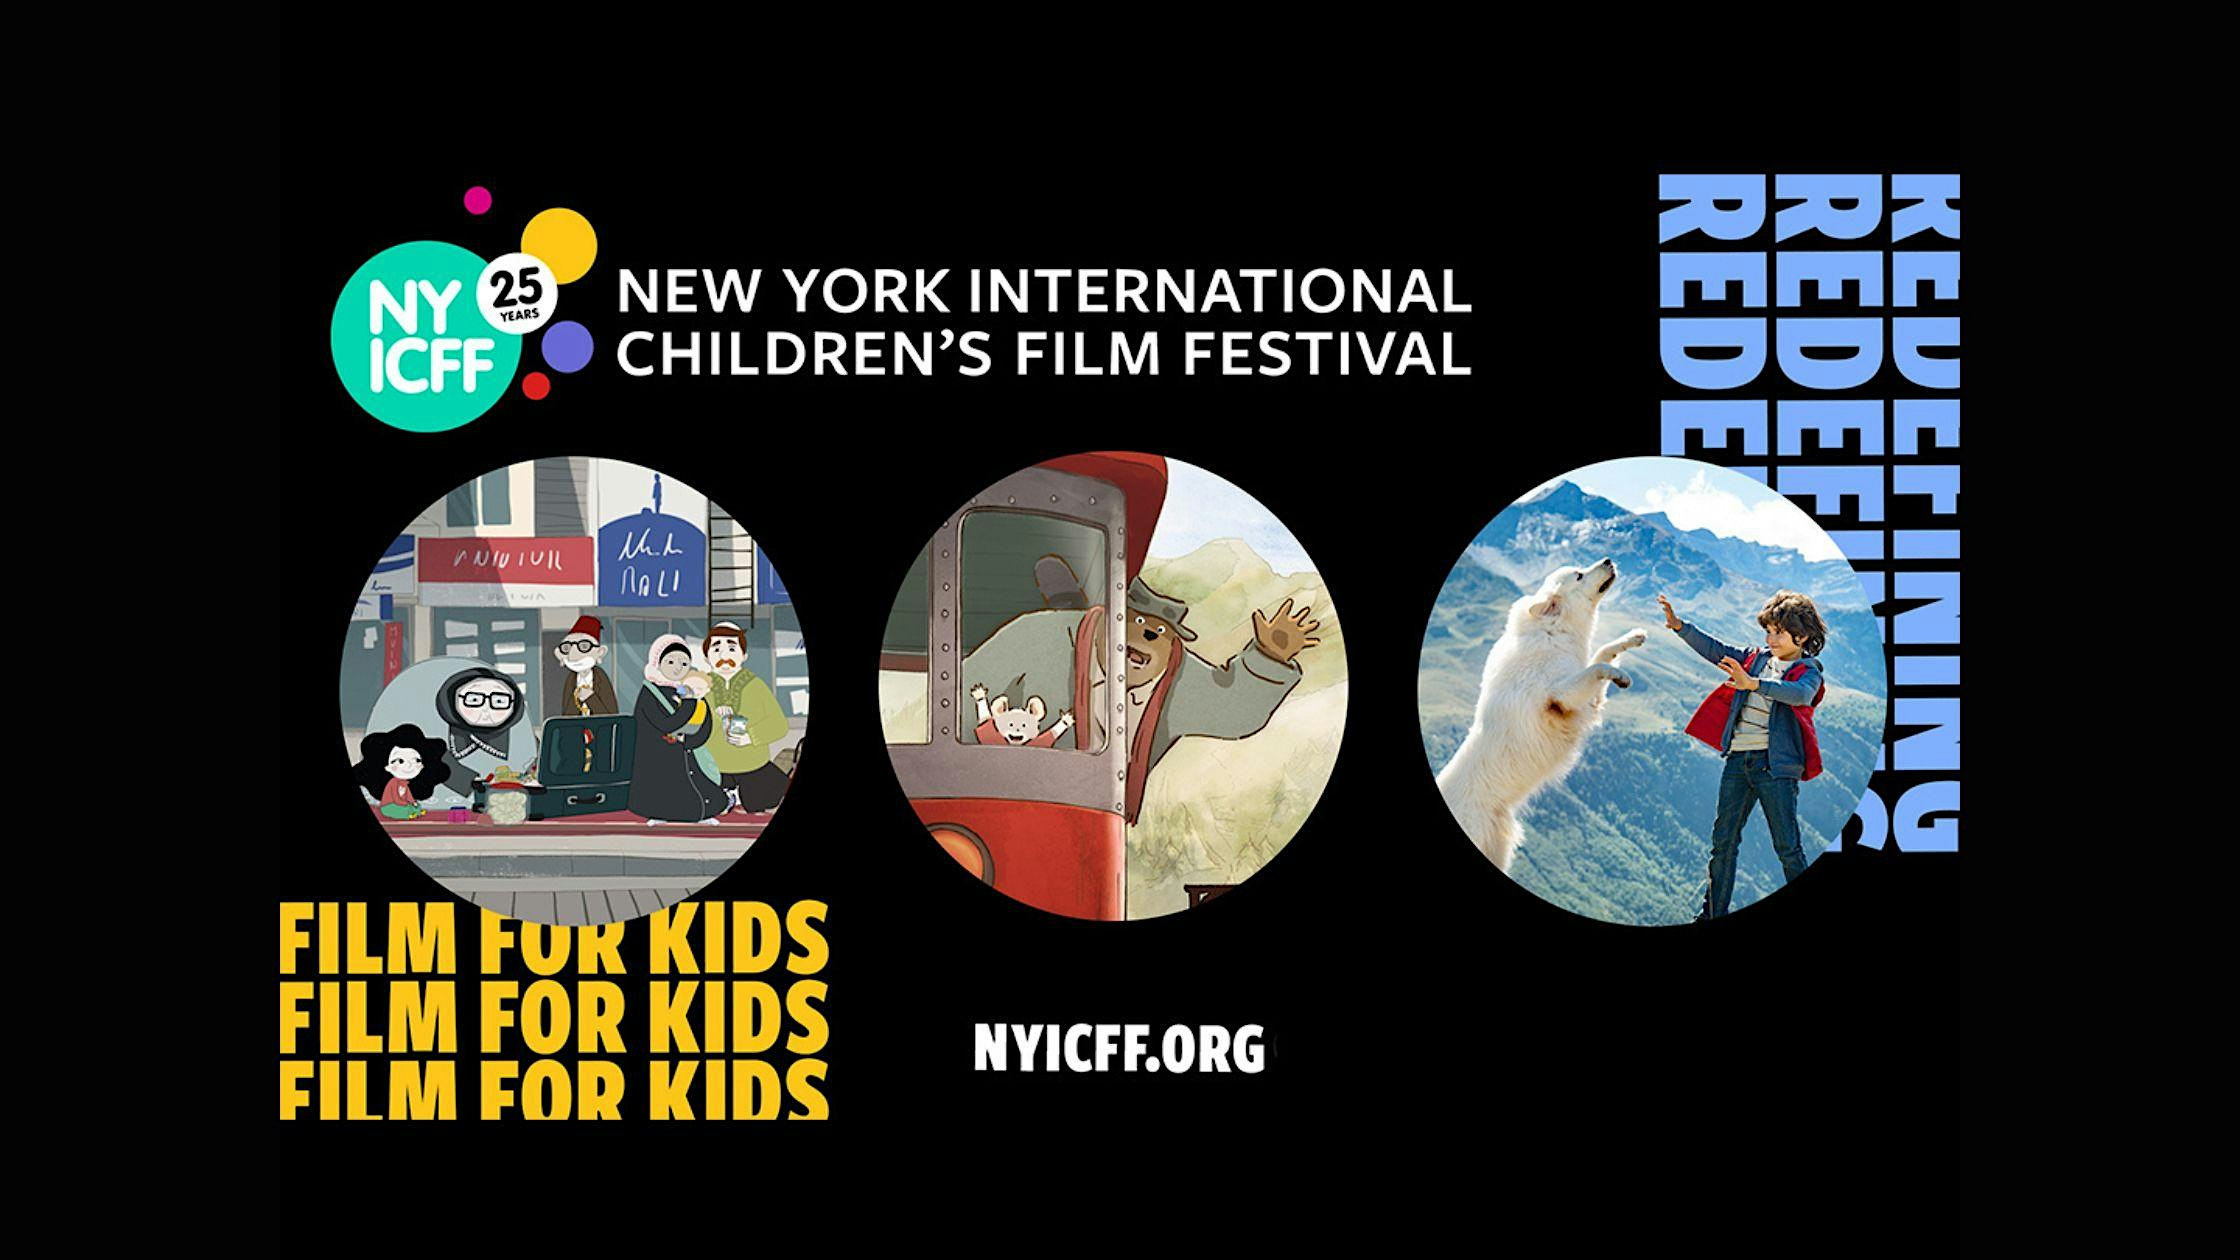 New York International Children's Film Festival